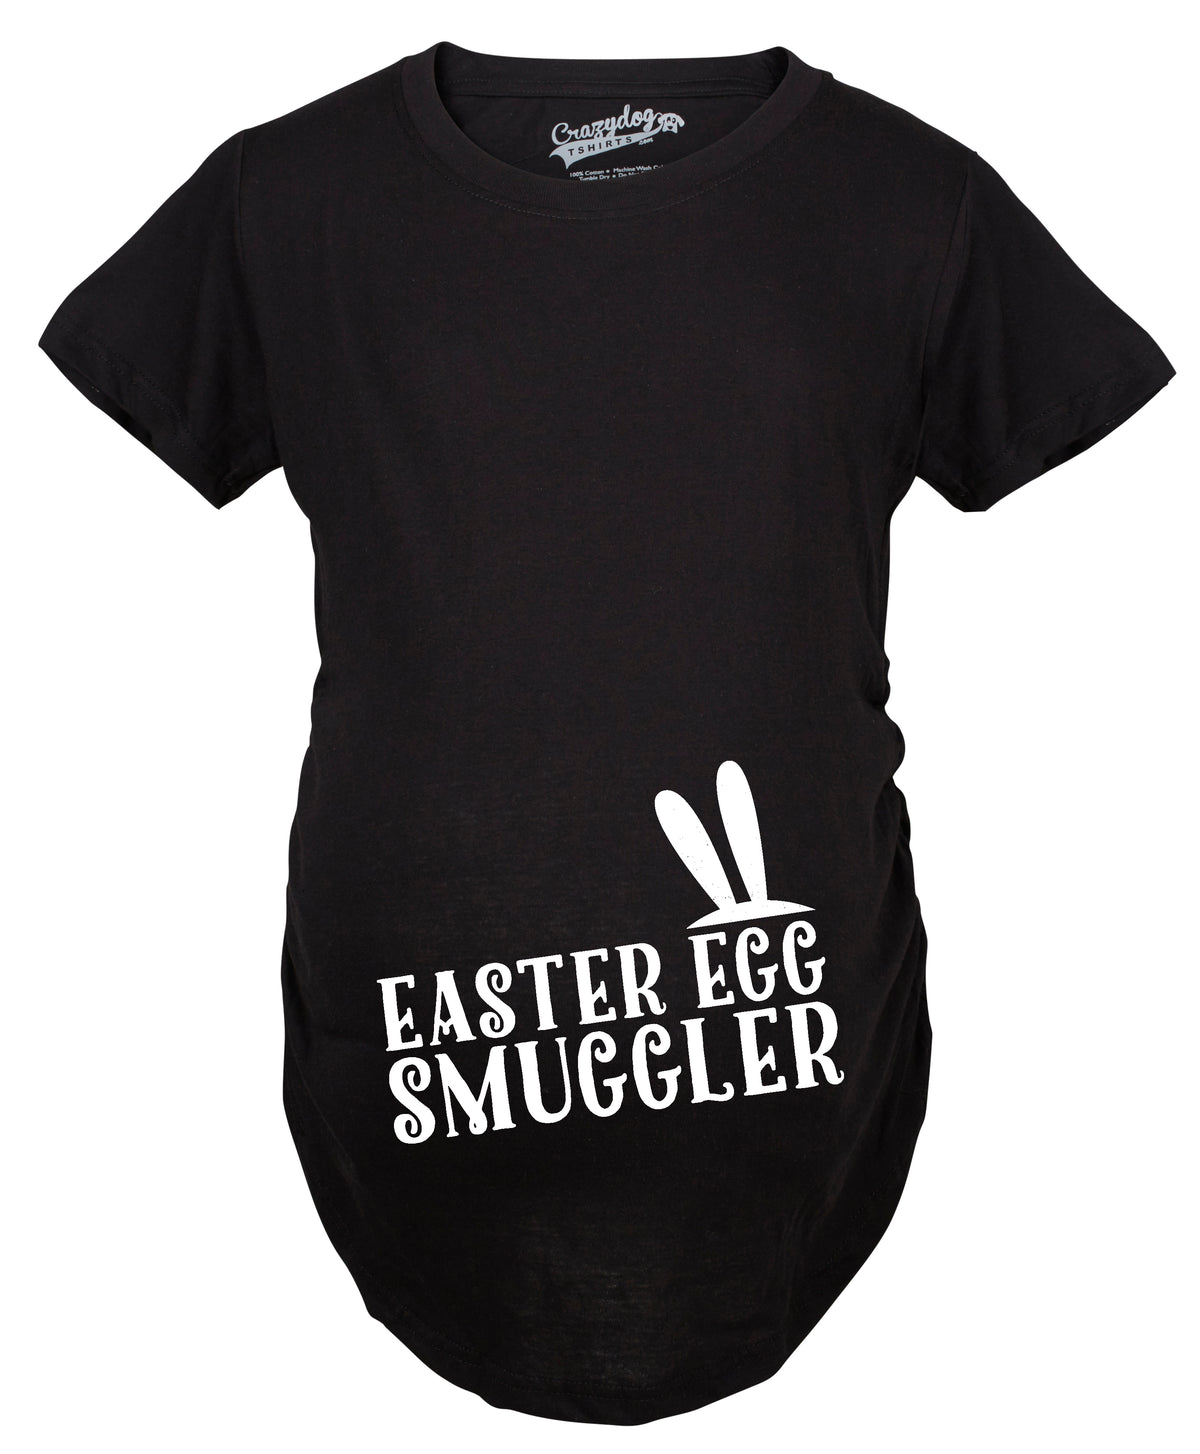 Easter Egg Smuggler Maternity T shirt Maternity T Shirt